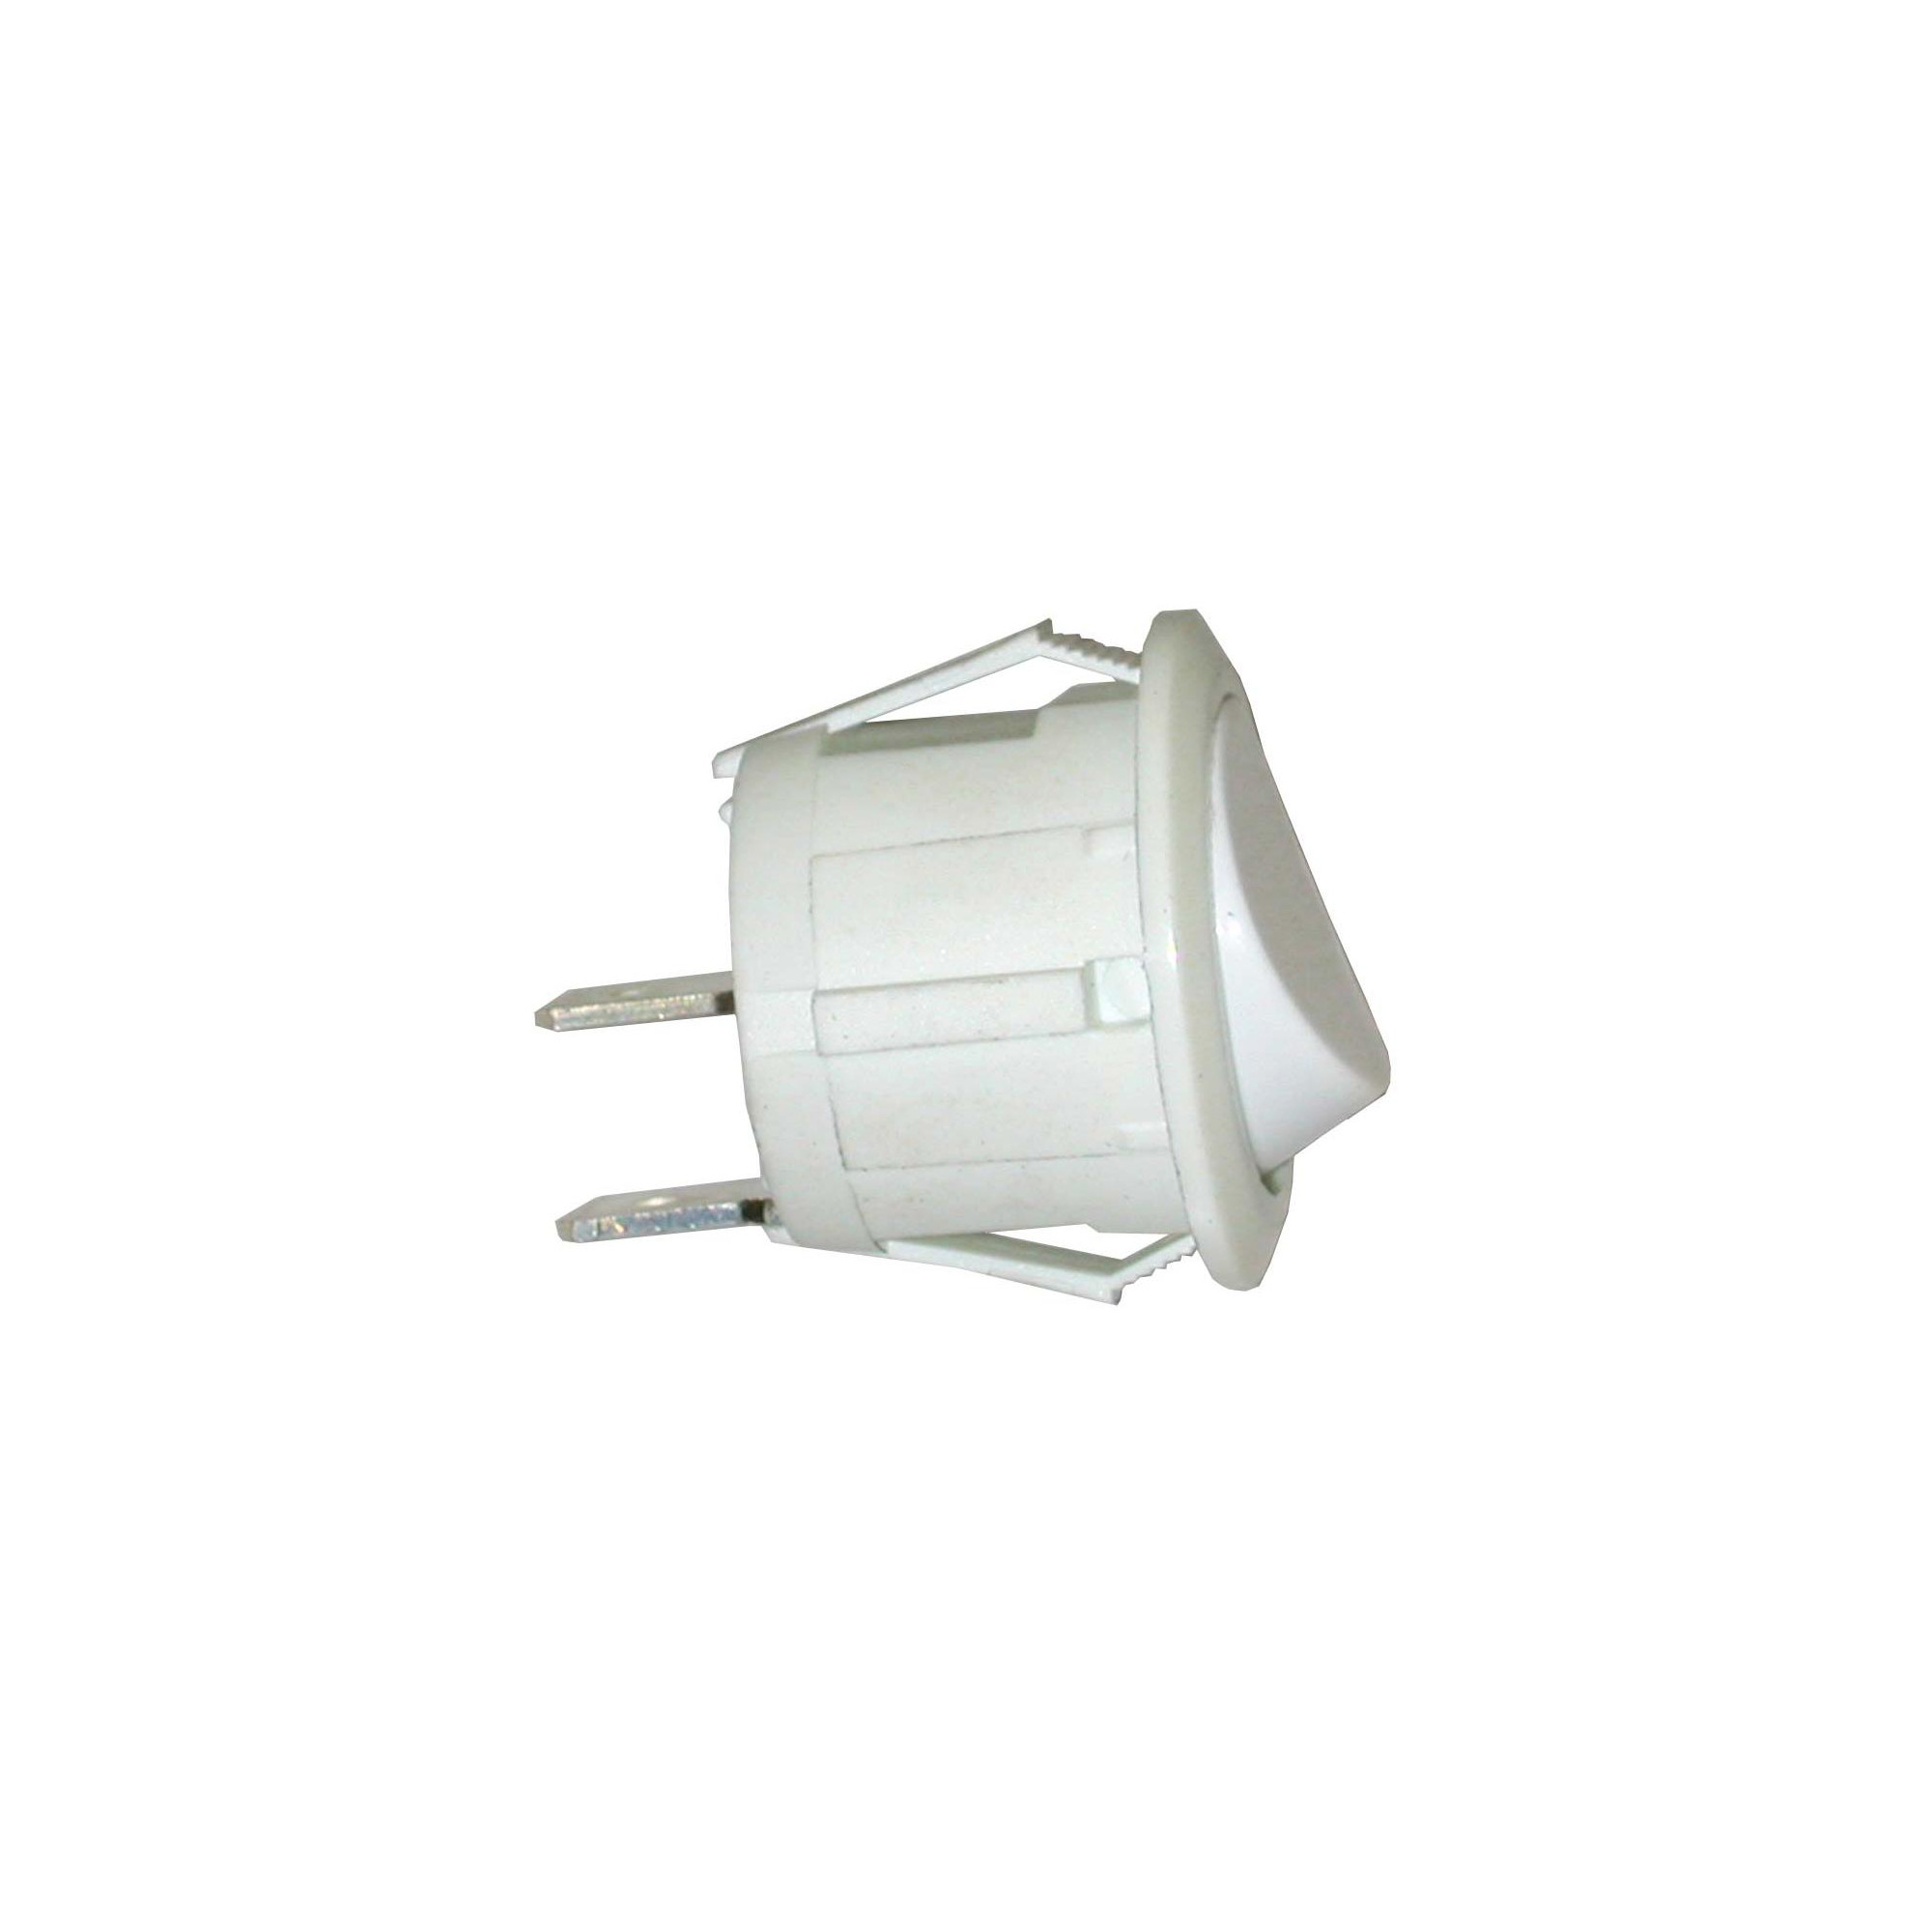 Frigidaire Dryer On-Off Rocker Switch – White. Part #134040800